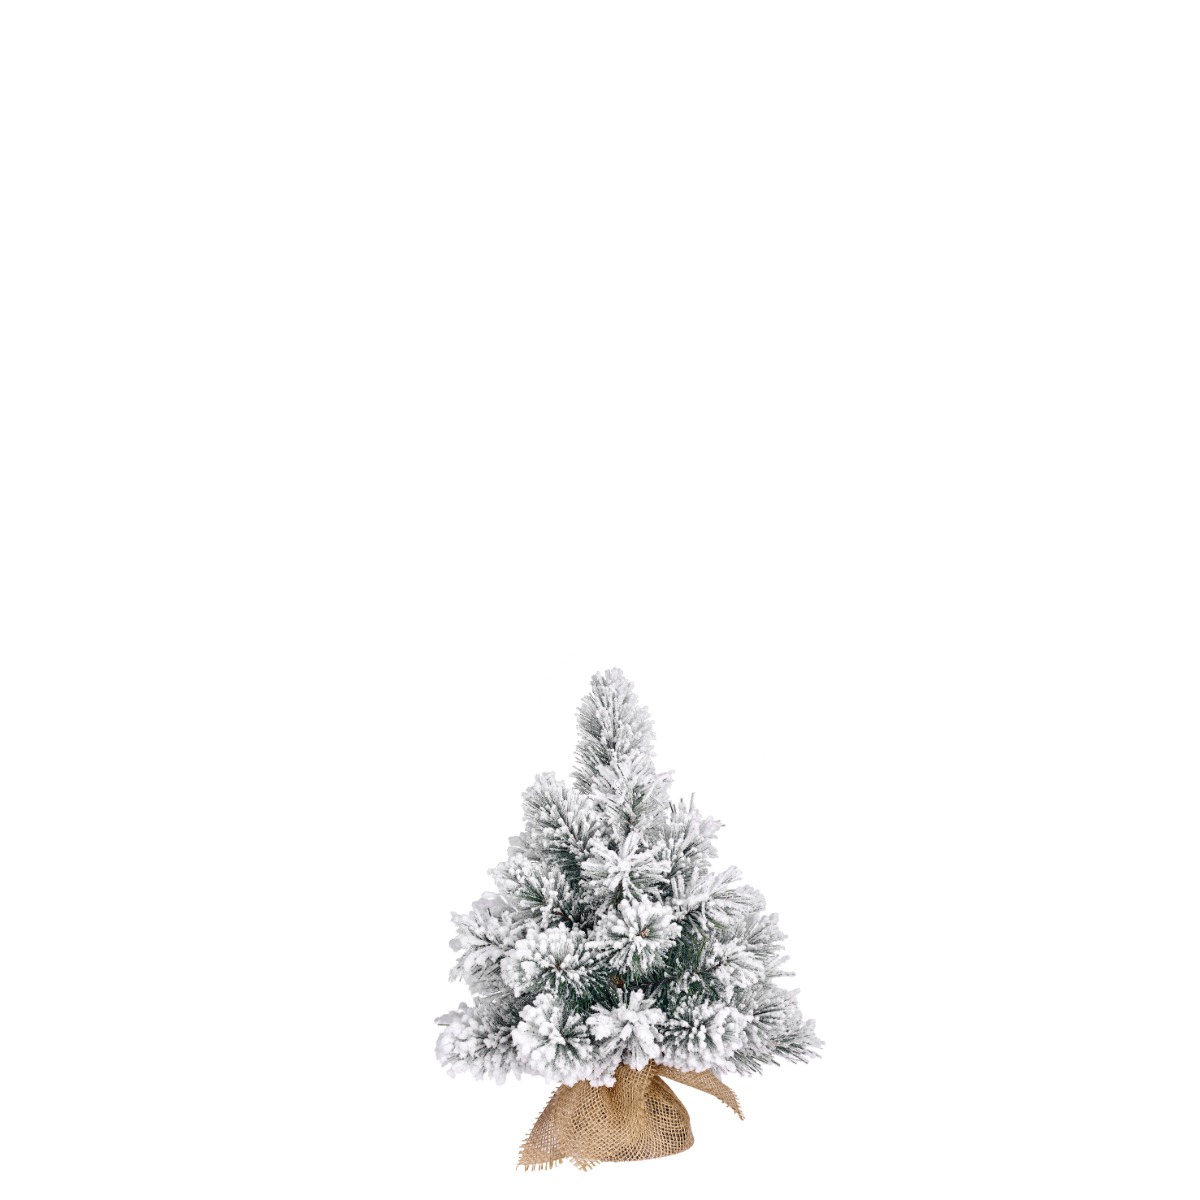 Dinsmore juletræ med sne 45 cm højt